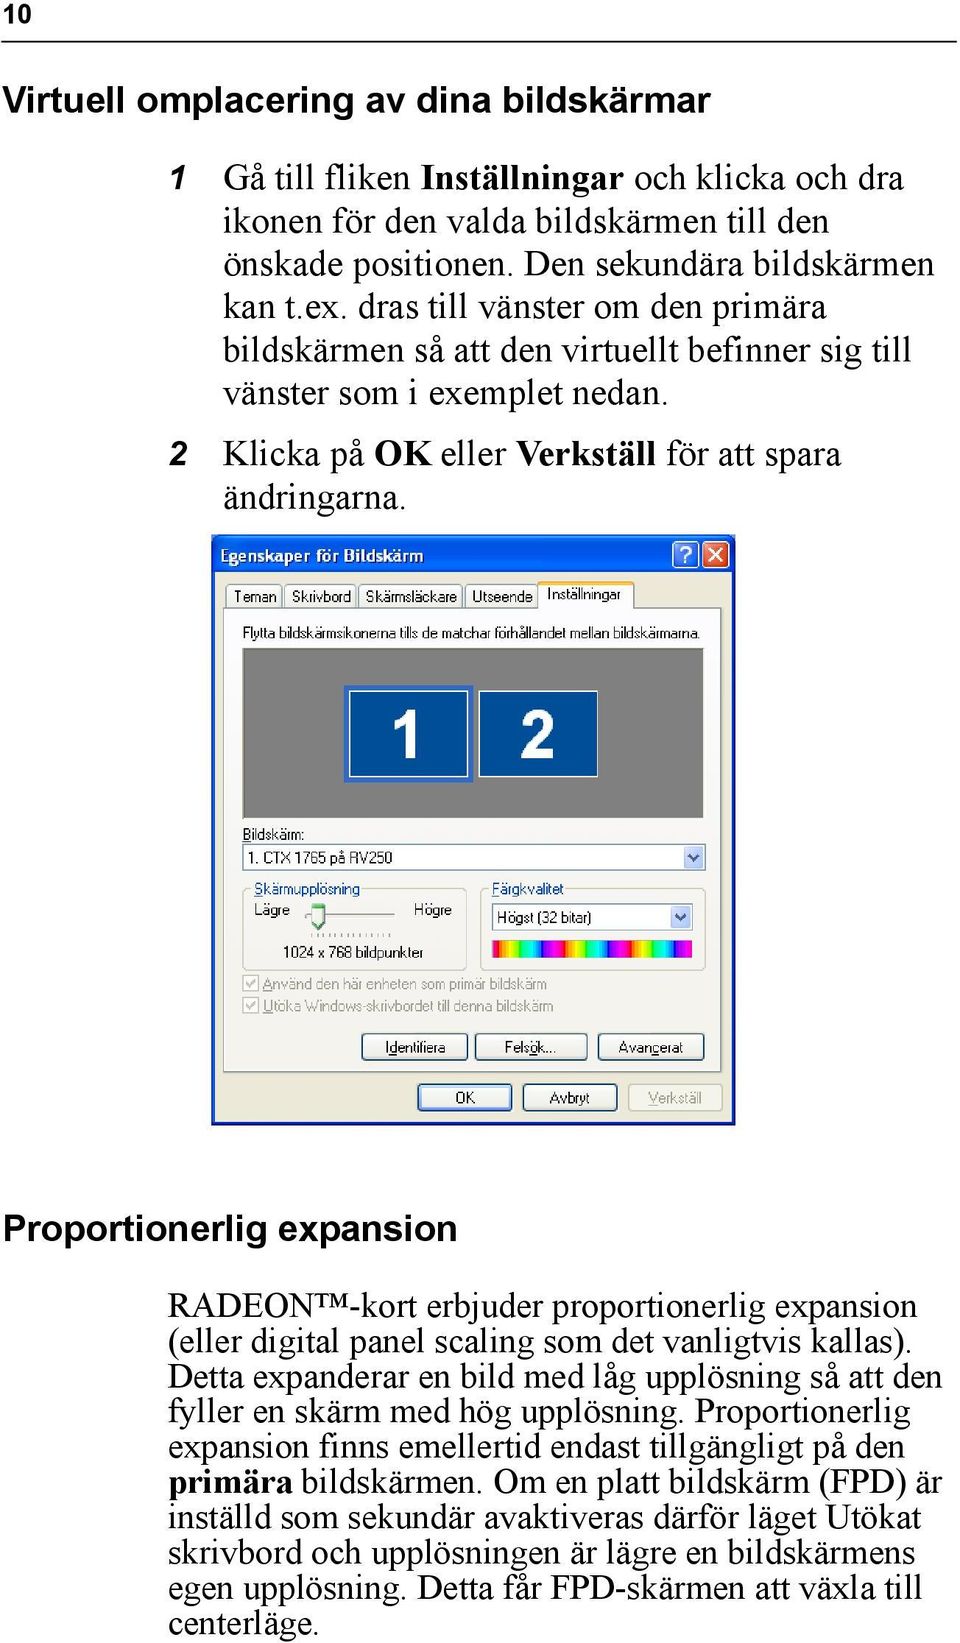 Proportionerlig expansion RADEON -kort erbjuder proportionerlig expansion (eller digital panel scaling som det vanligtvis kallas).